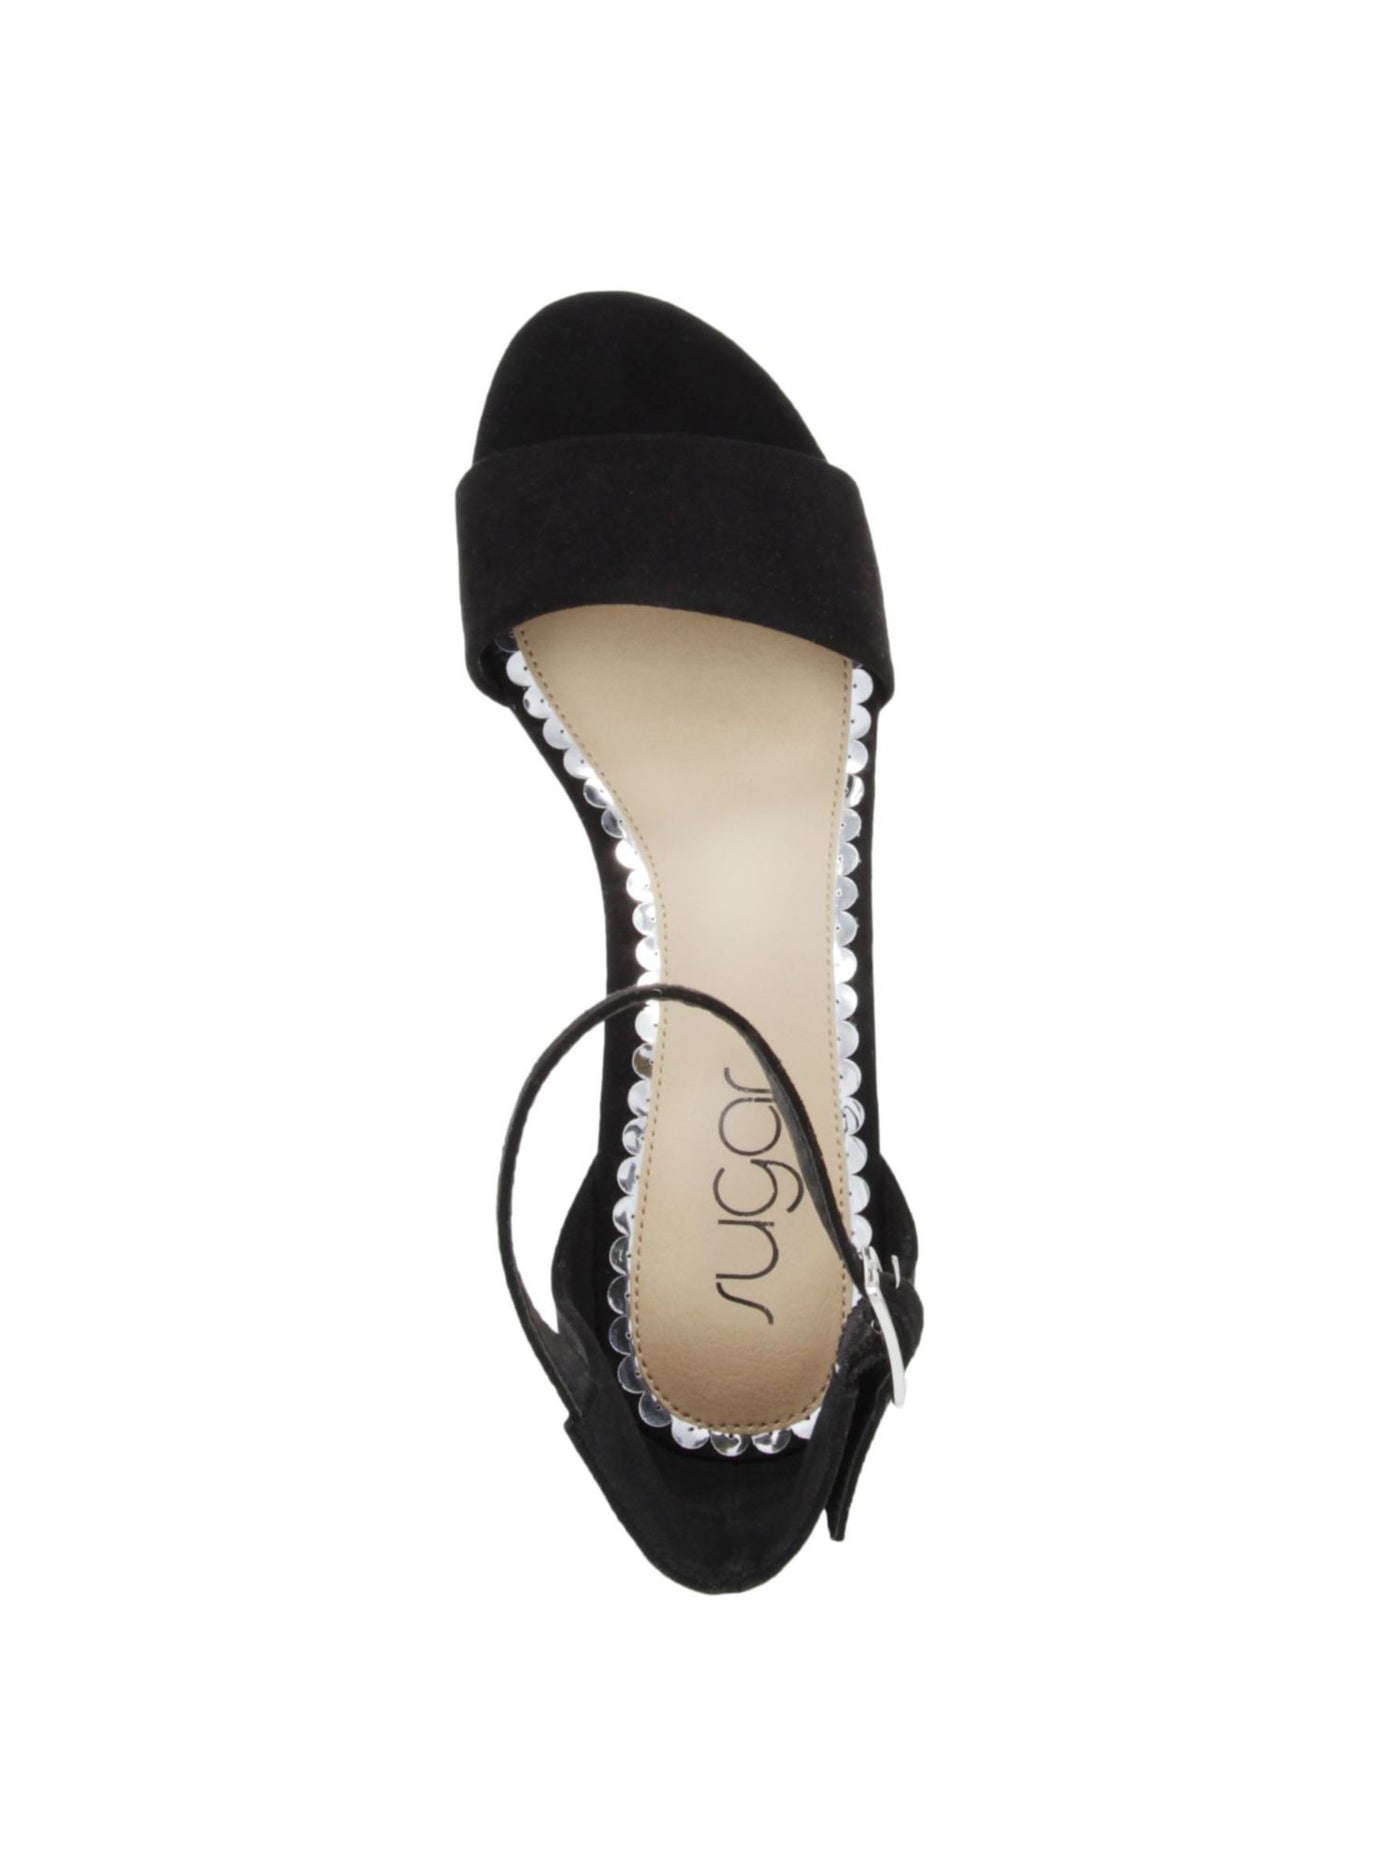 SUGAR Womens Black Adjustable Strap Noelle Low Open Toe Block Heel Buckle Dress Sandals Shoes 7.5 W